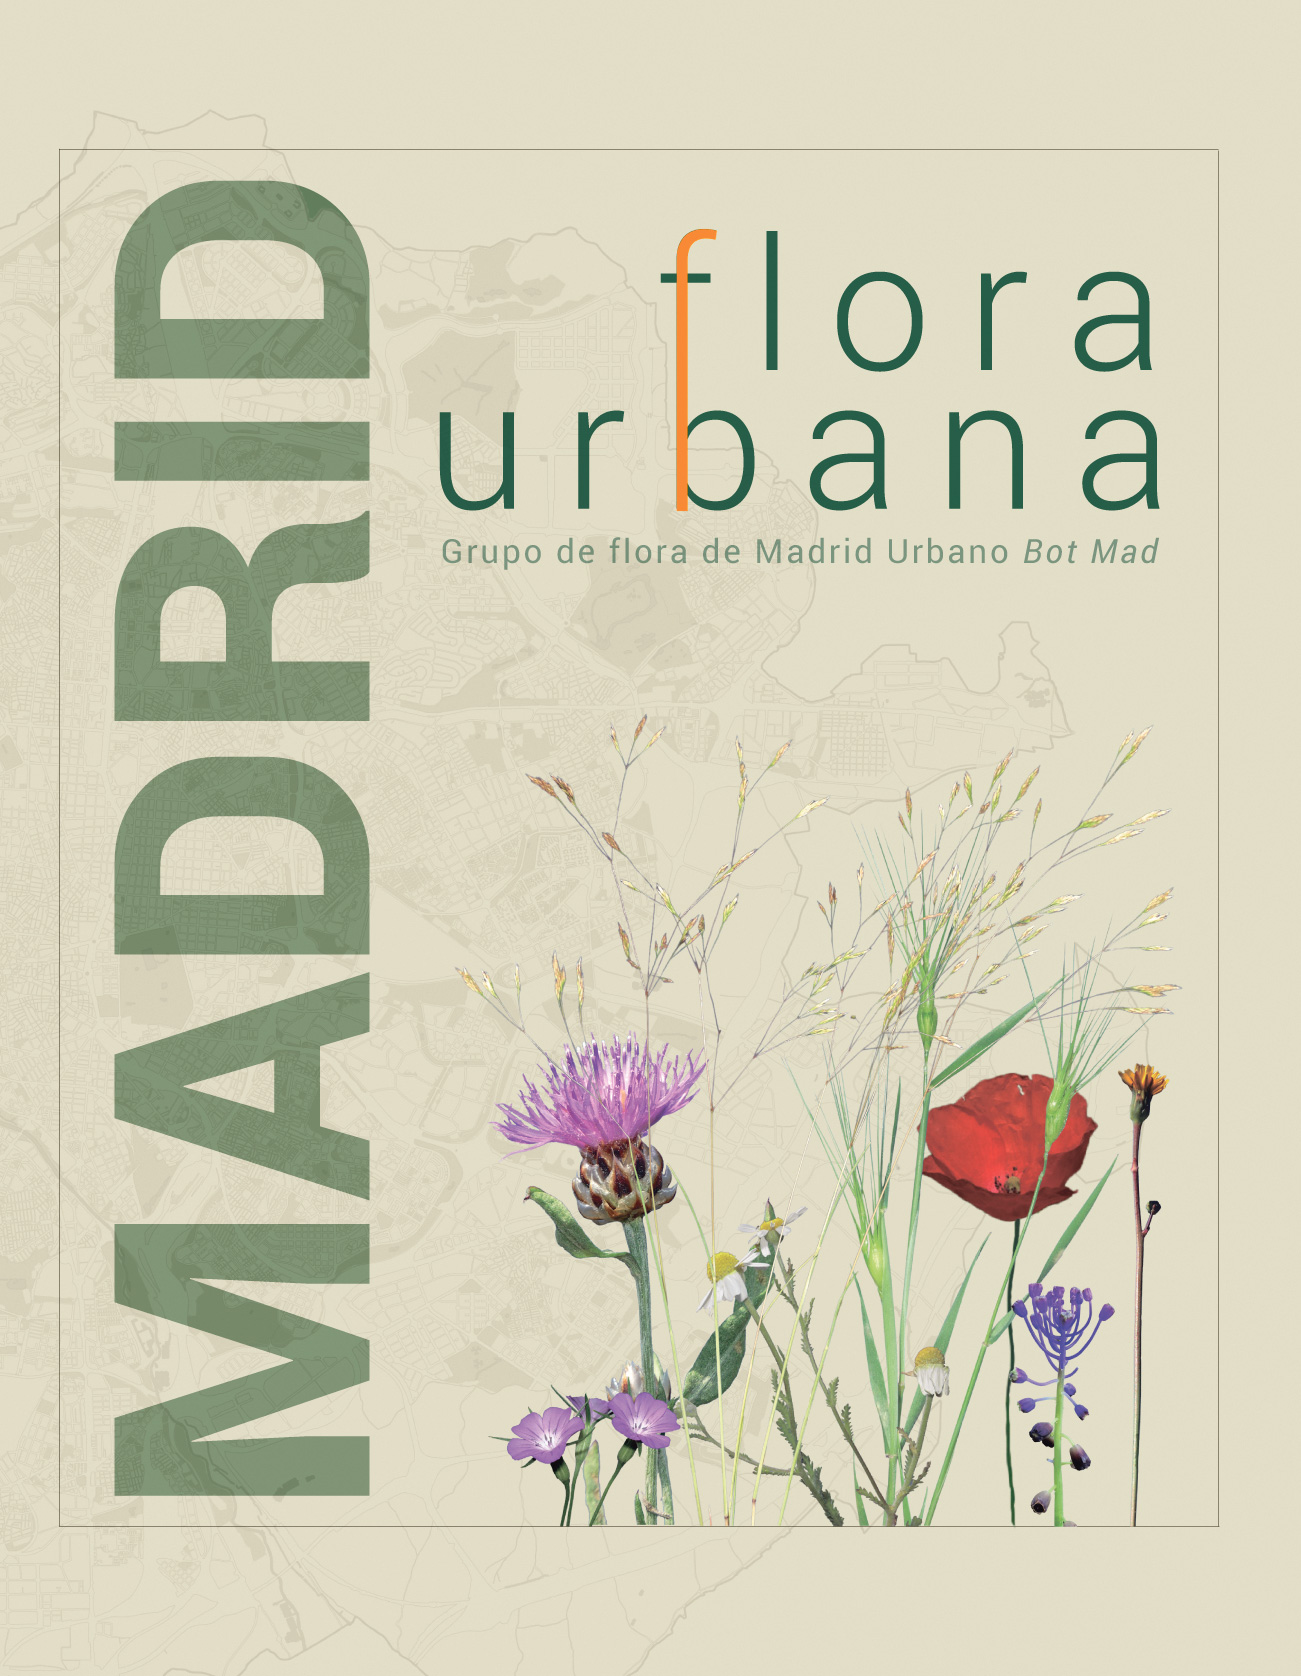 Figura Madrid flora urbana 